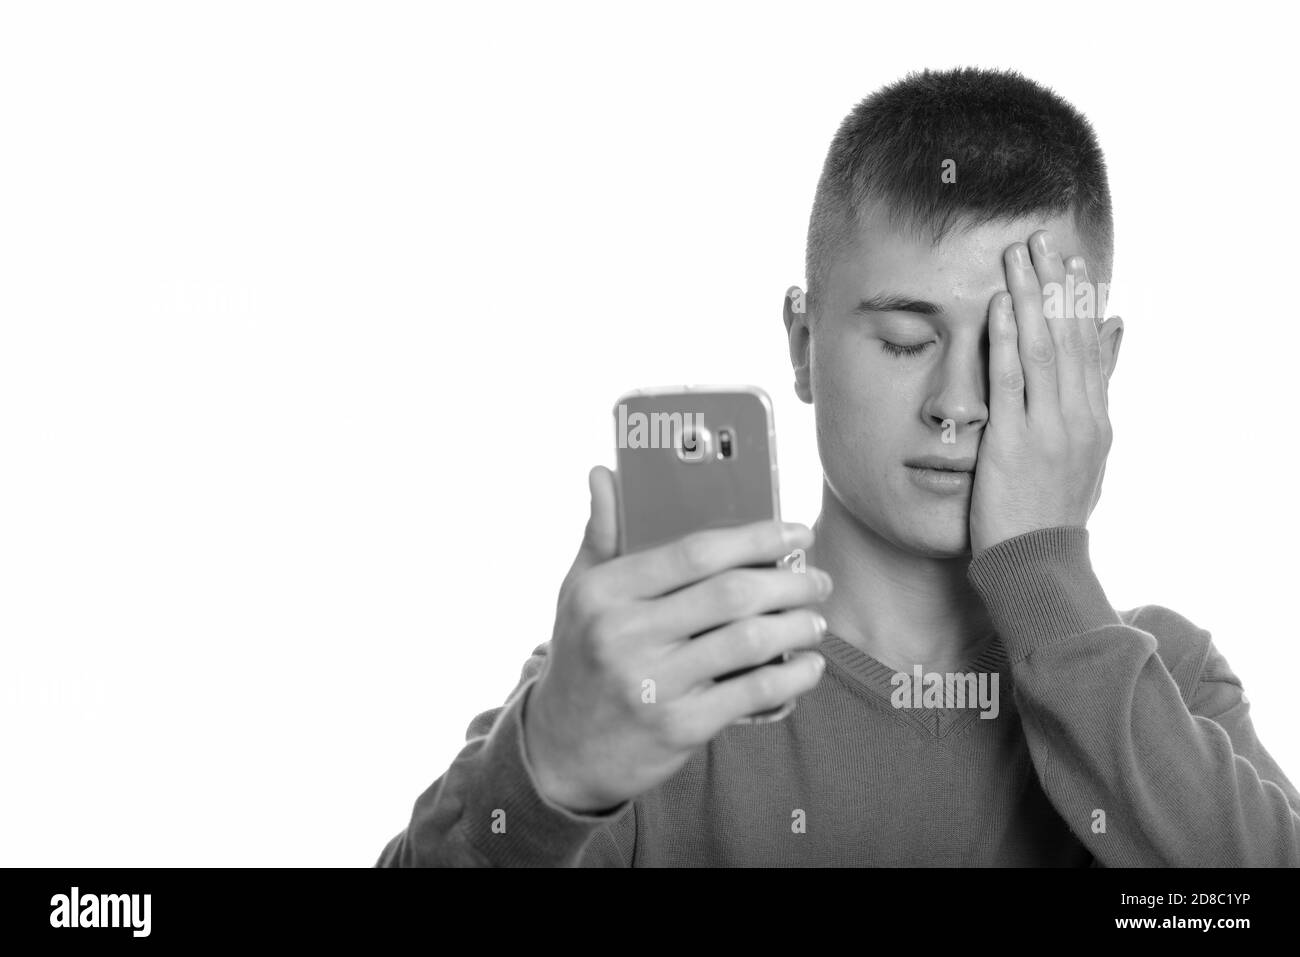 Young Caucasian man holding mobile phone à la fatigue les yeux fermés Banque D'Images